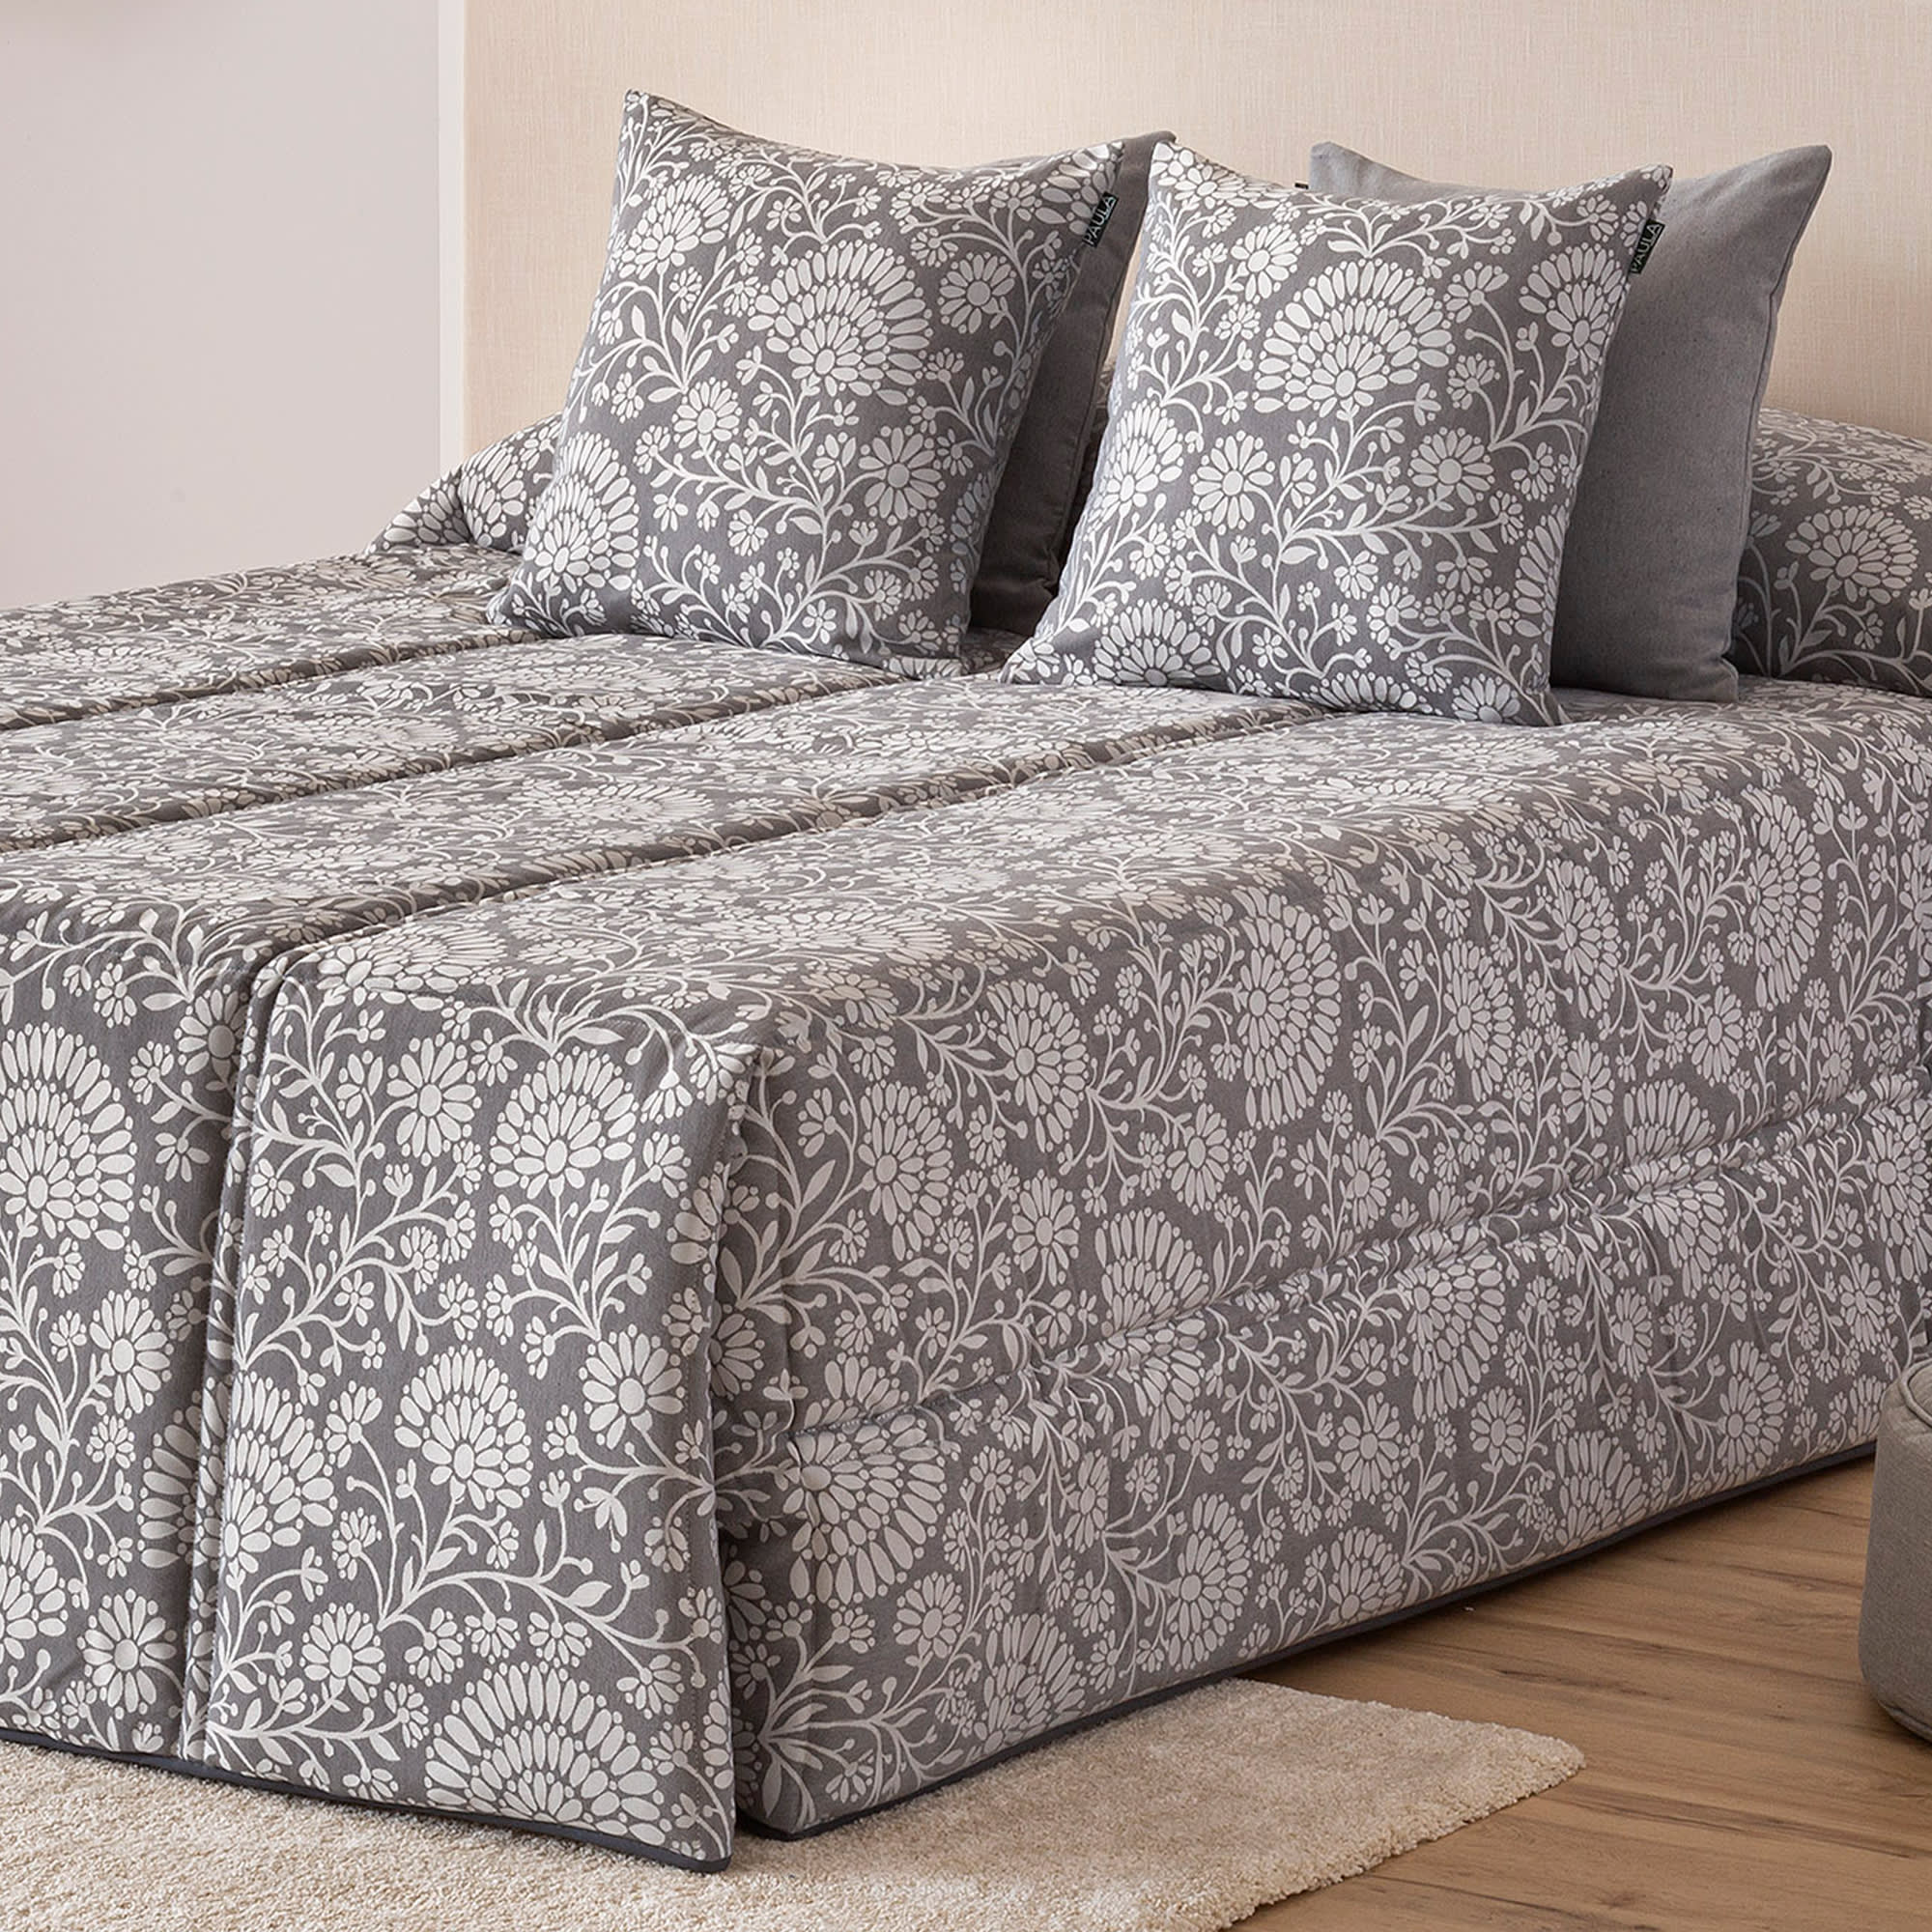 Edredón confort acolchado 200 gr jacquard verde cama 135 (190x265 cm) UTIEL